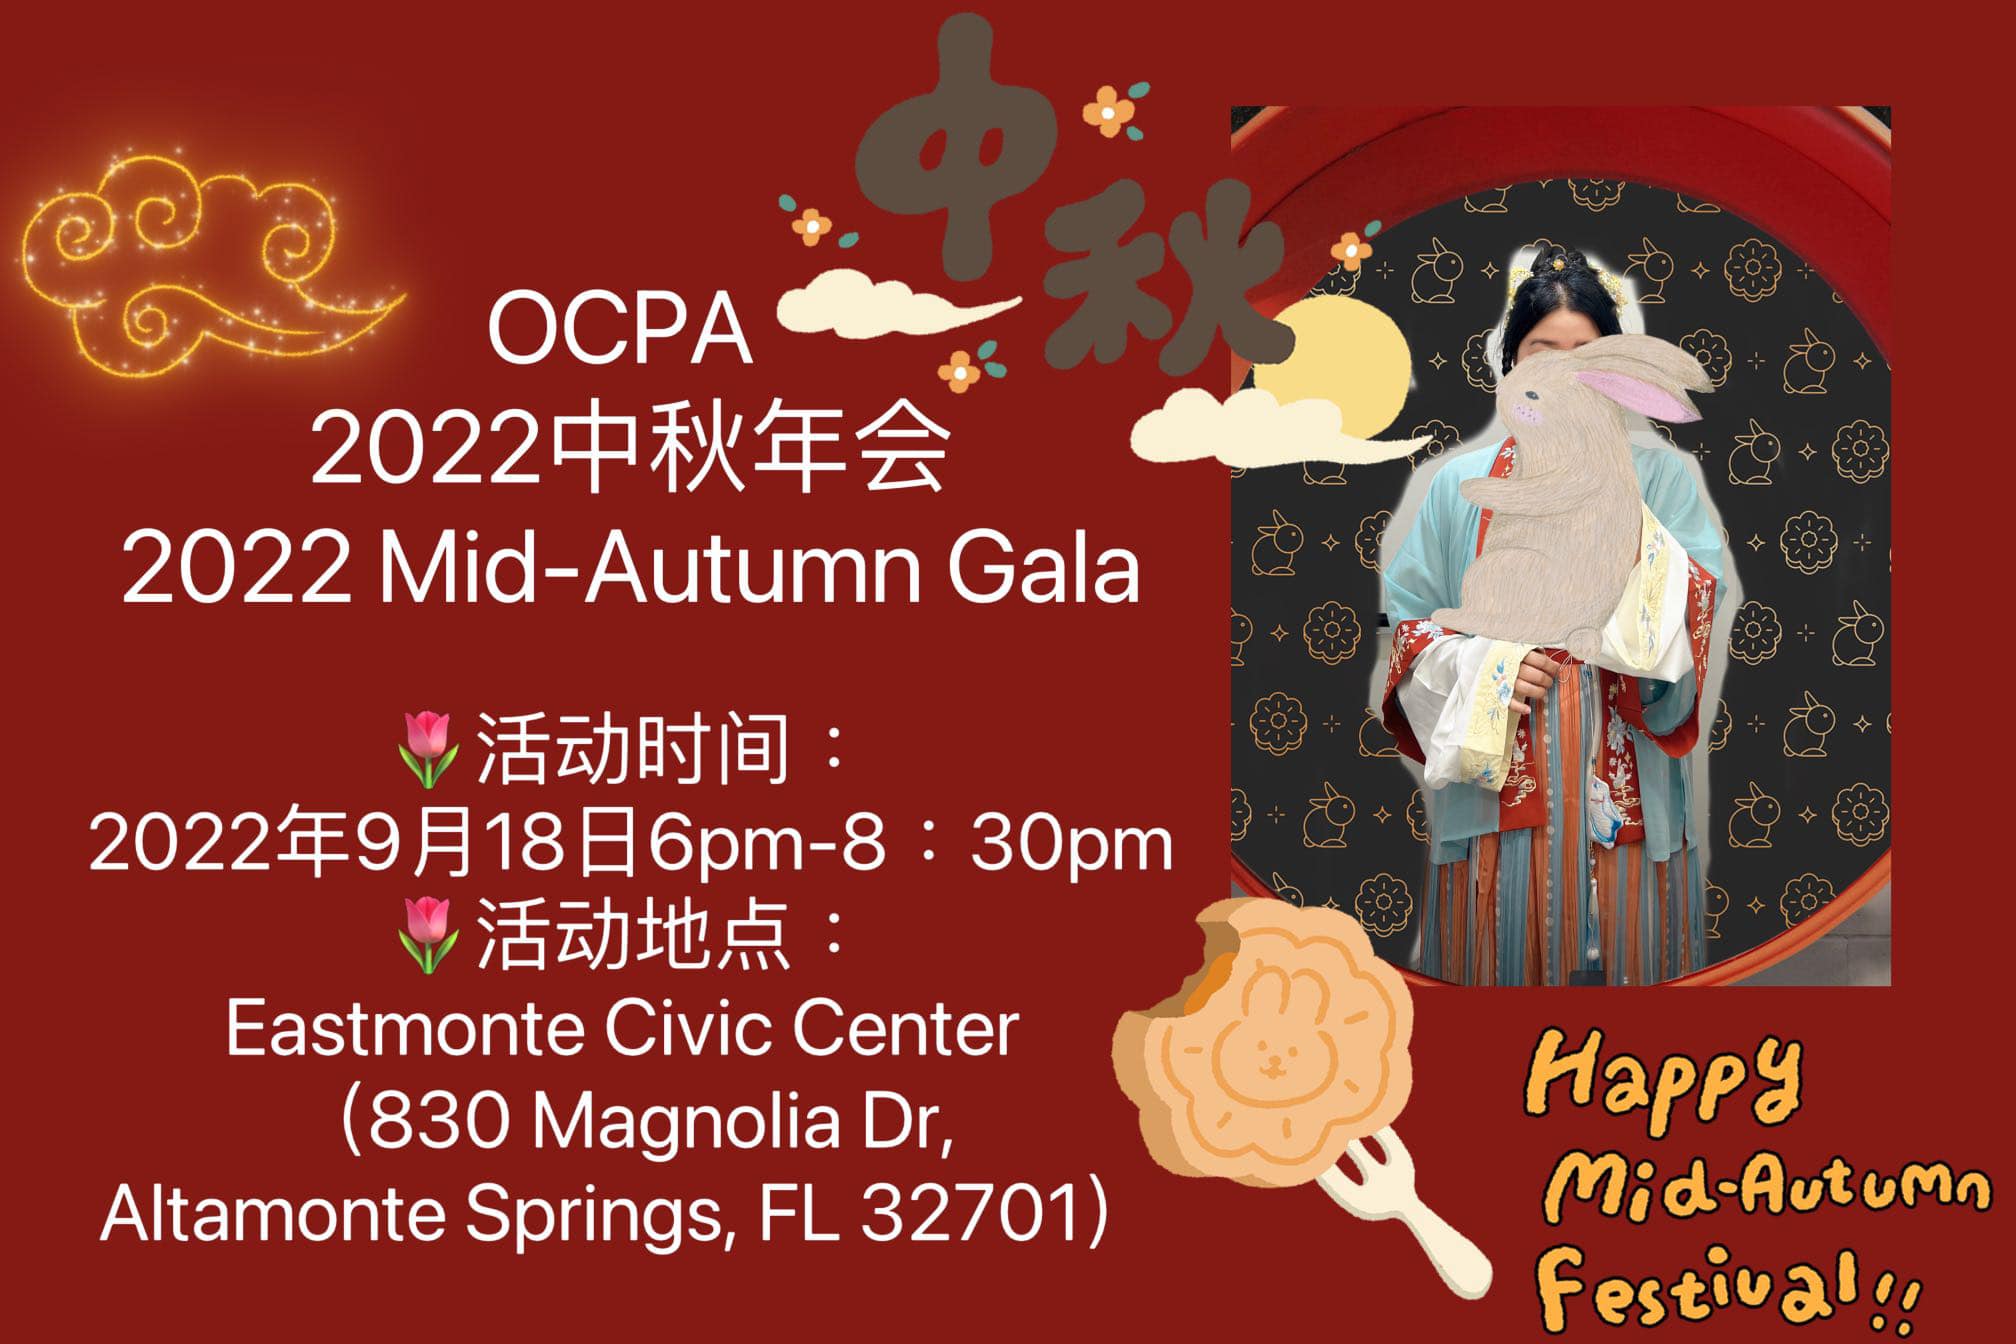 OCPA’s 2022 Mid-Autumn Gala